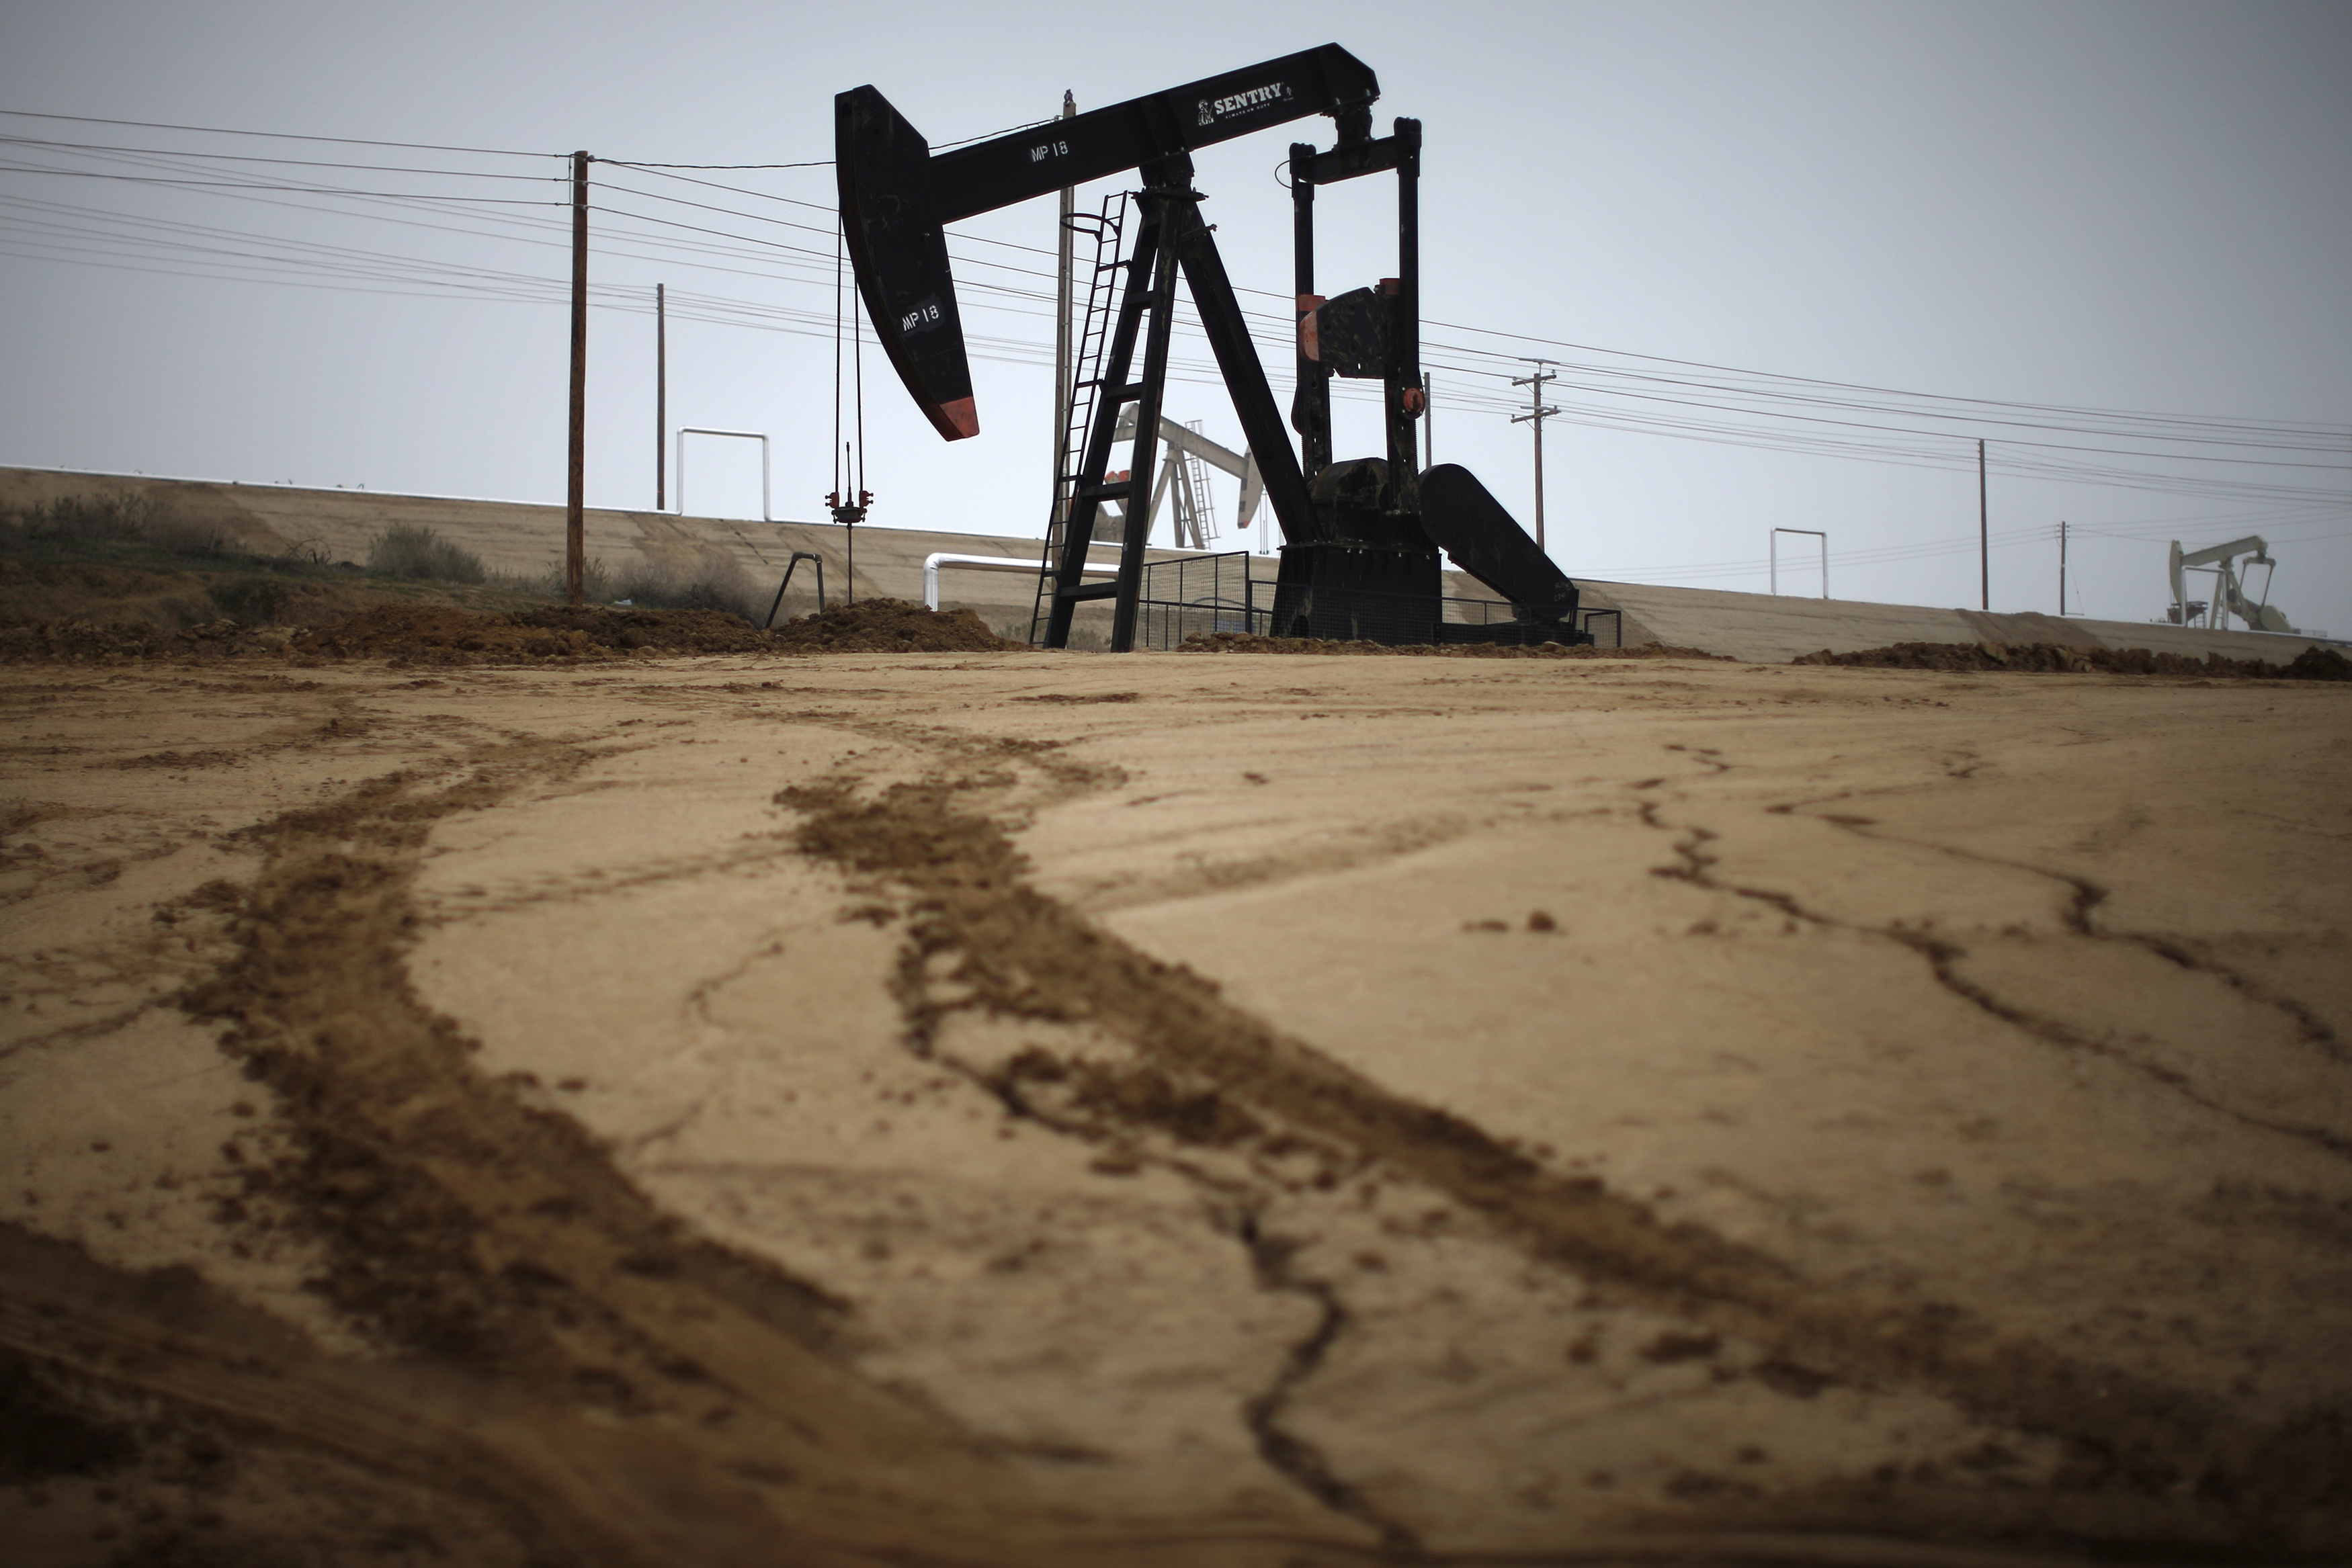 Pump jack is seen on an oil field near Bakersfield on a foggy day